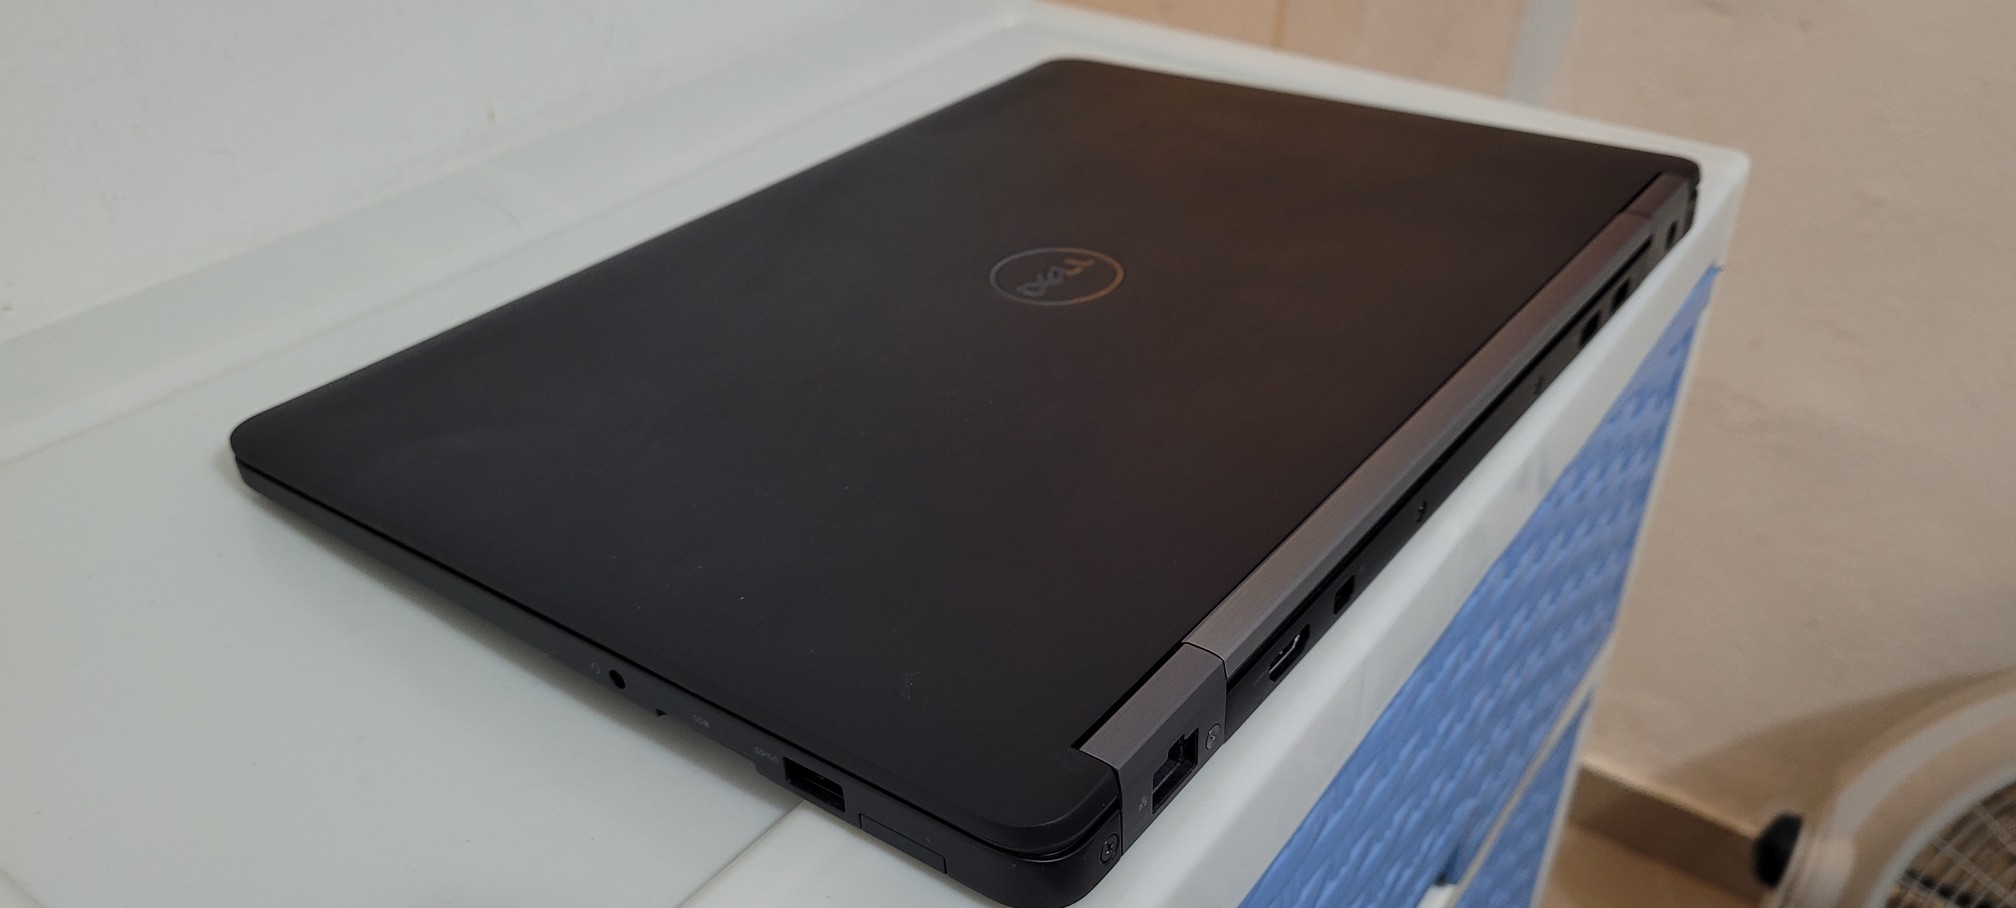 computadoras y laptops - Dell 7470 14 Pulg Core i5 7ma Gen Ram 8gb ddr4 Disco 128gb SSD Full 1080p 2